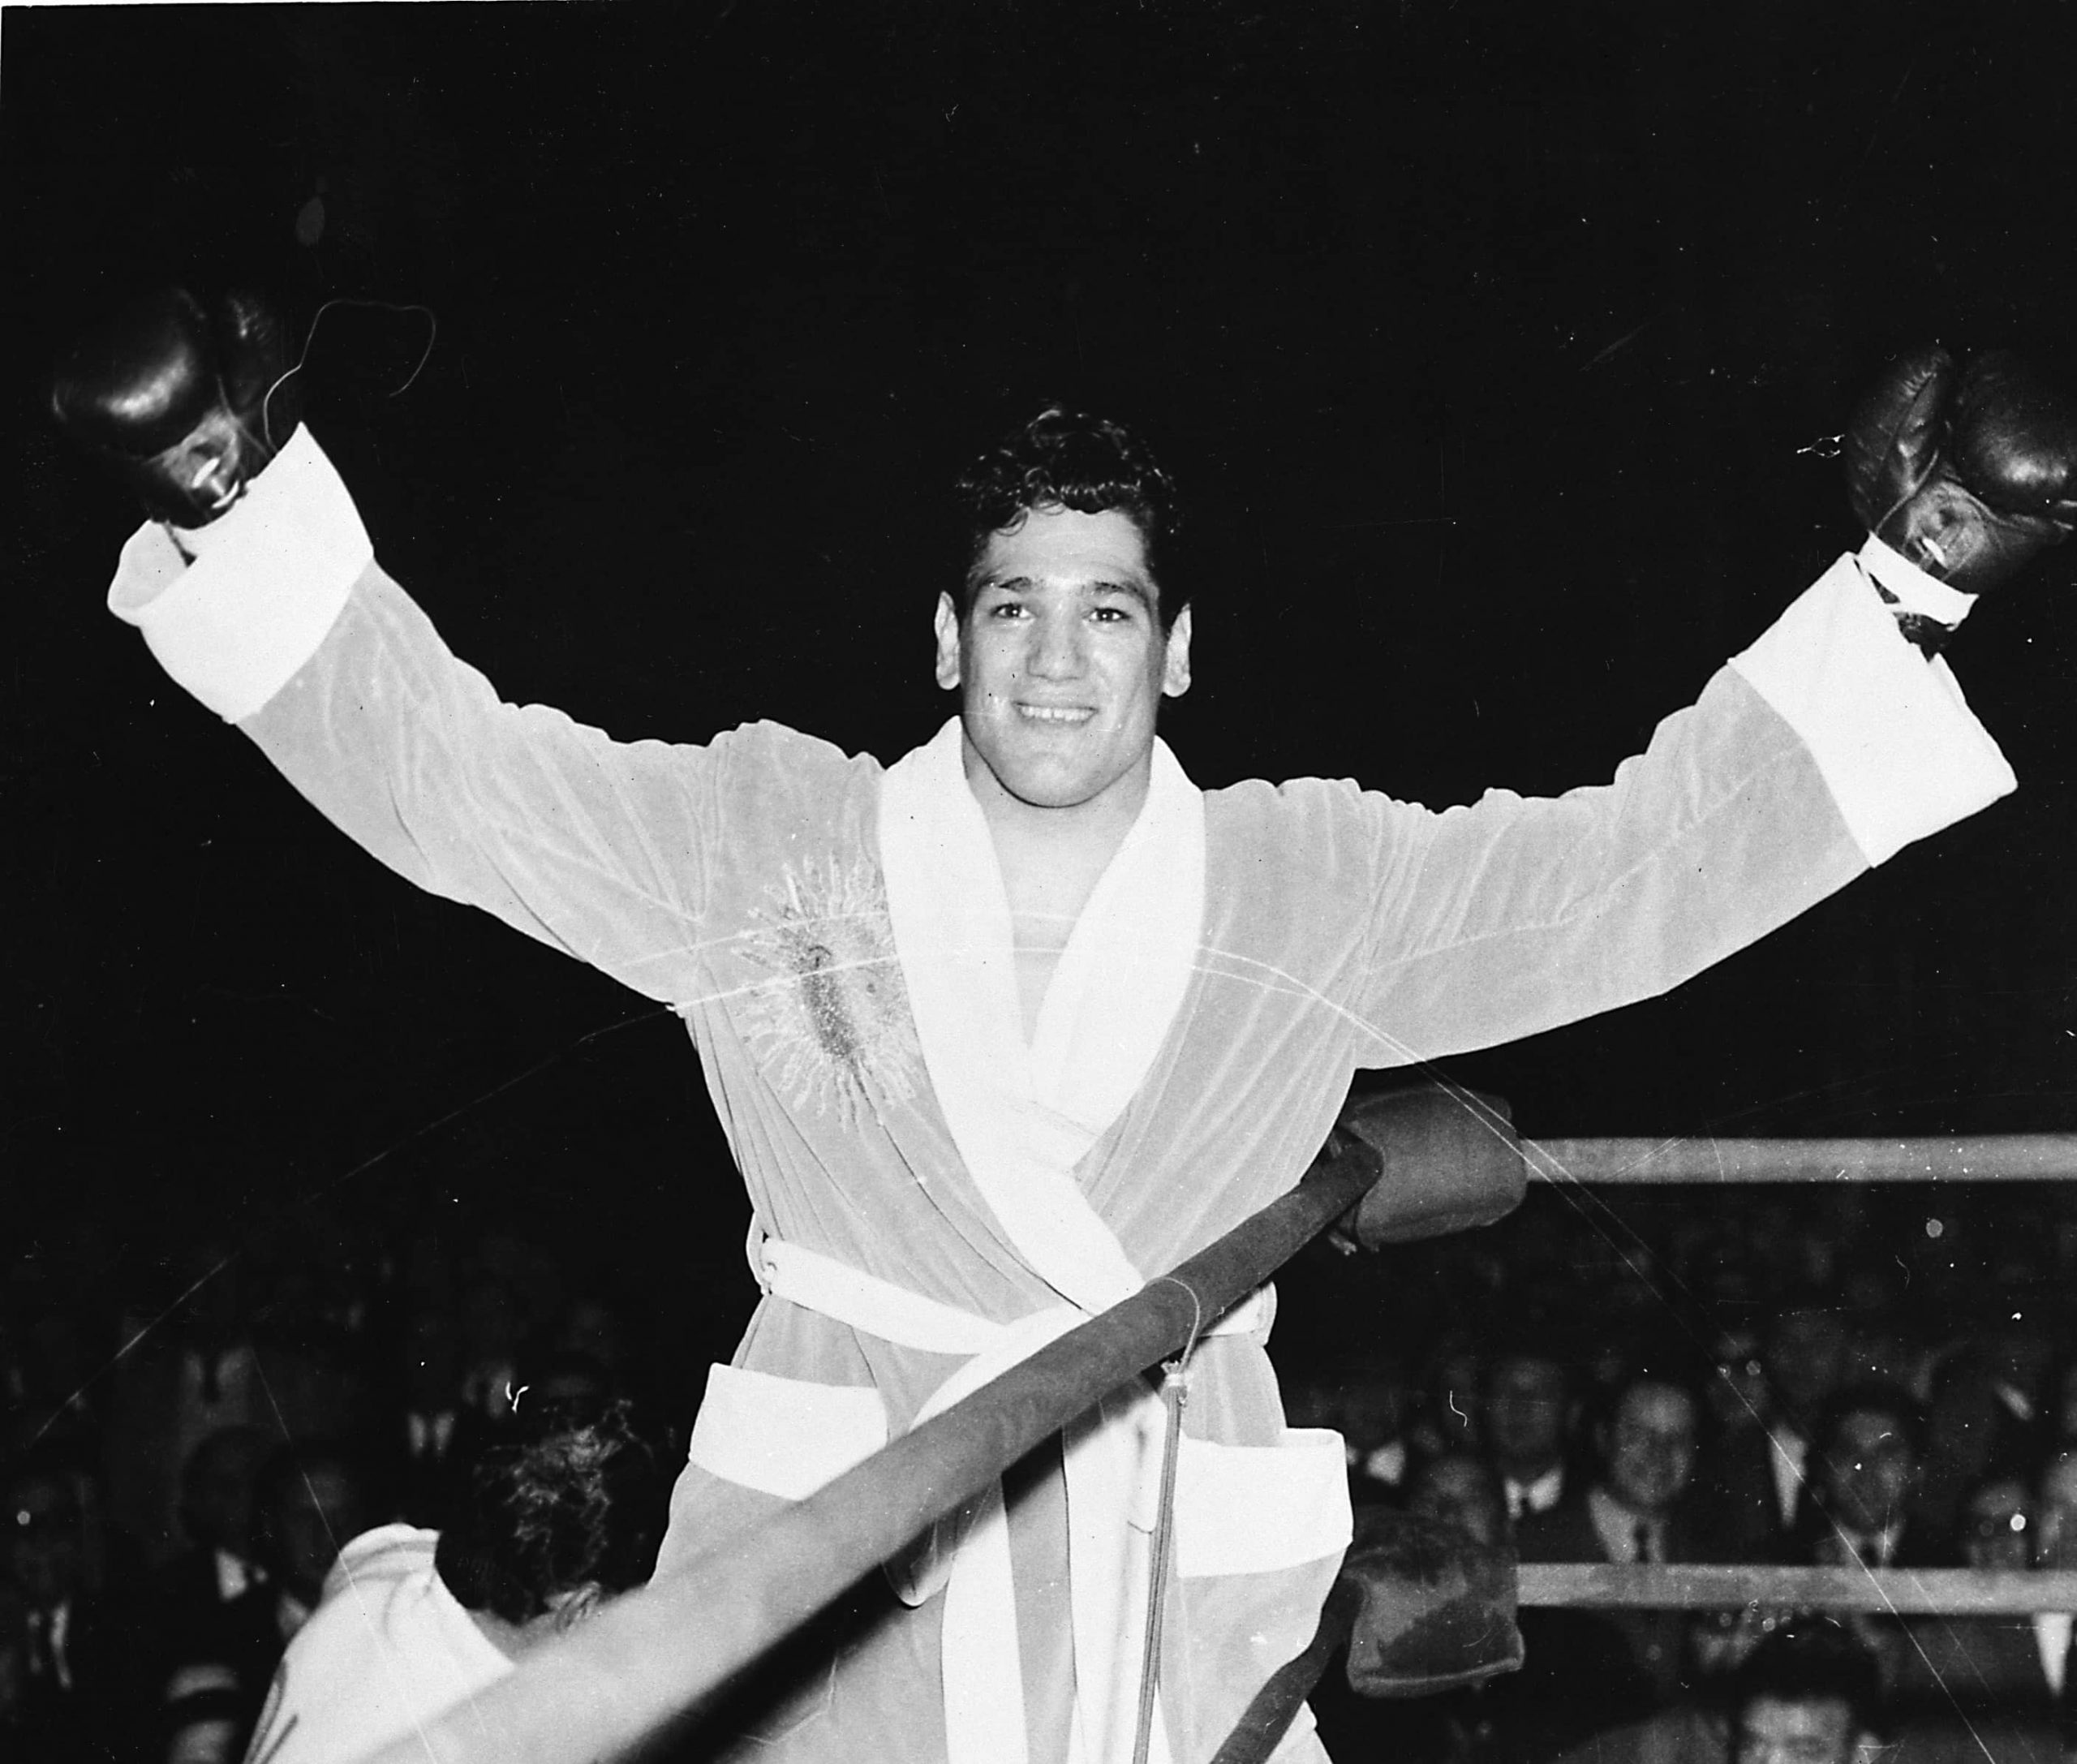 Foto de Confirmada serie biopic del campeón argentino de boxeo Oscar “Ringo” Bonavena